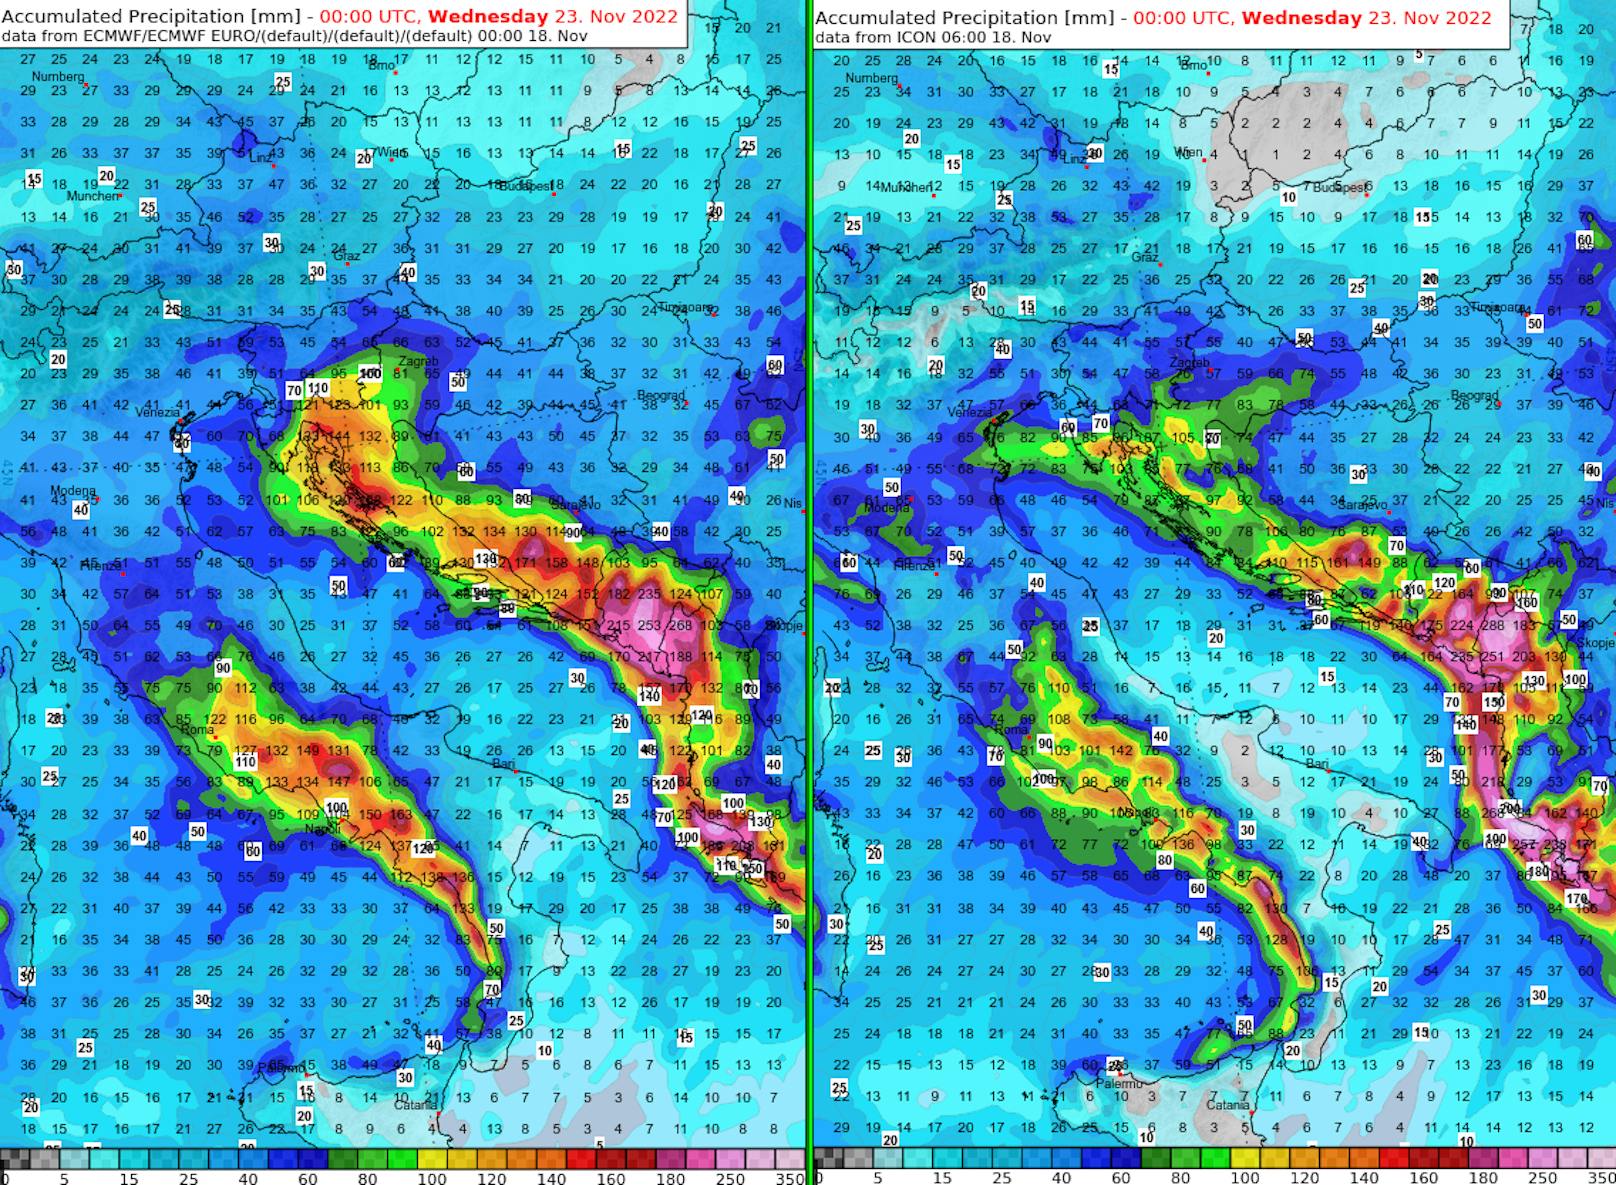 Bis Dienstagabend werden immense Regengüsse im Mittelmeerraum erwartet.